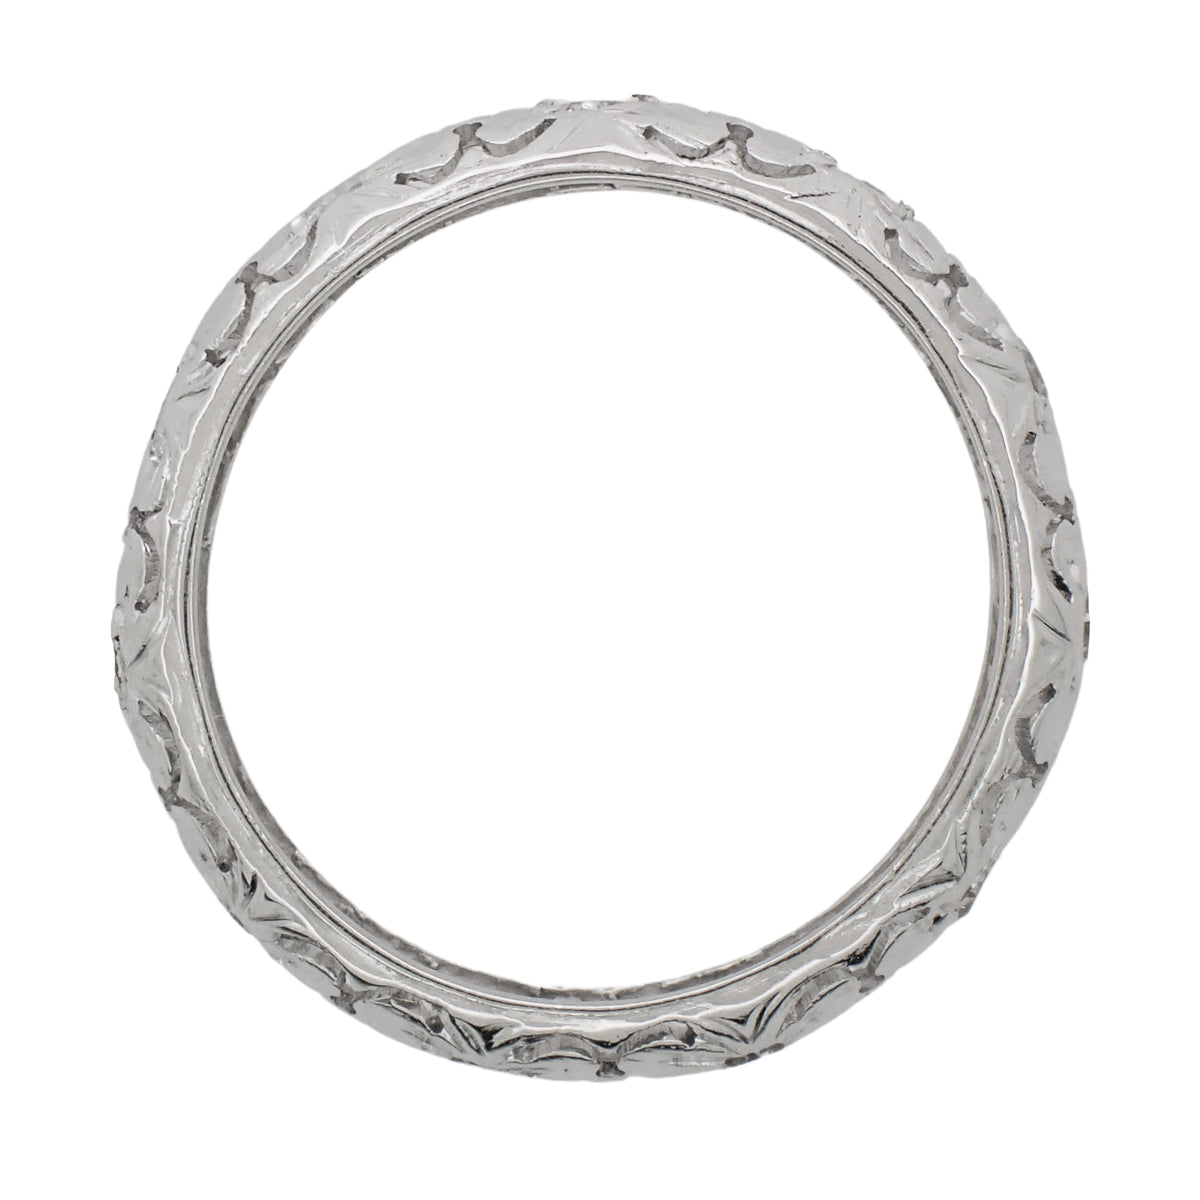 Art Deco Diamond Antique Flanders Wedding Ring in Platinum - Size 5 1/2 - Item: R1082 - Image: 2